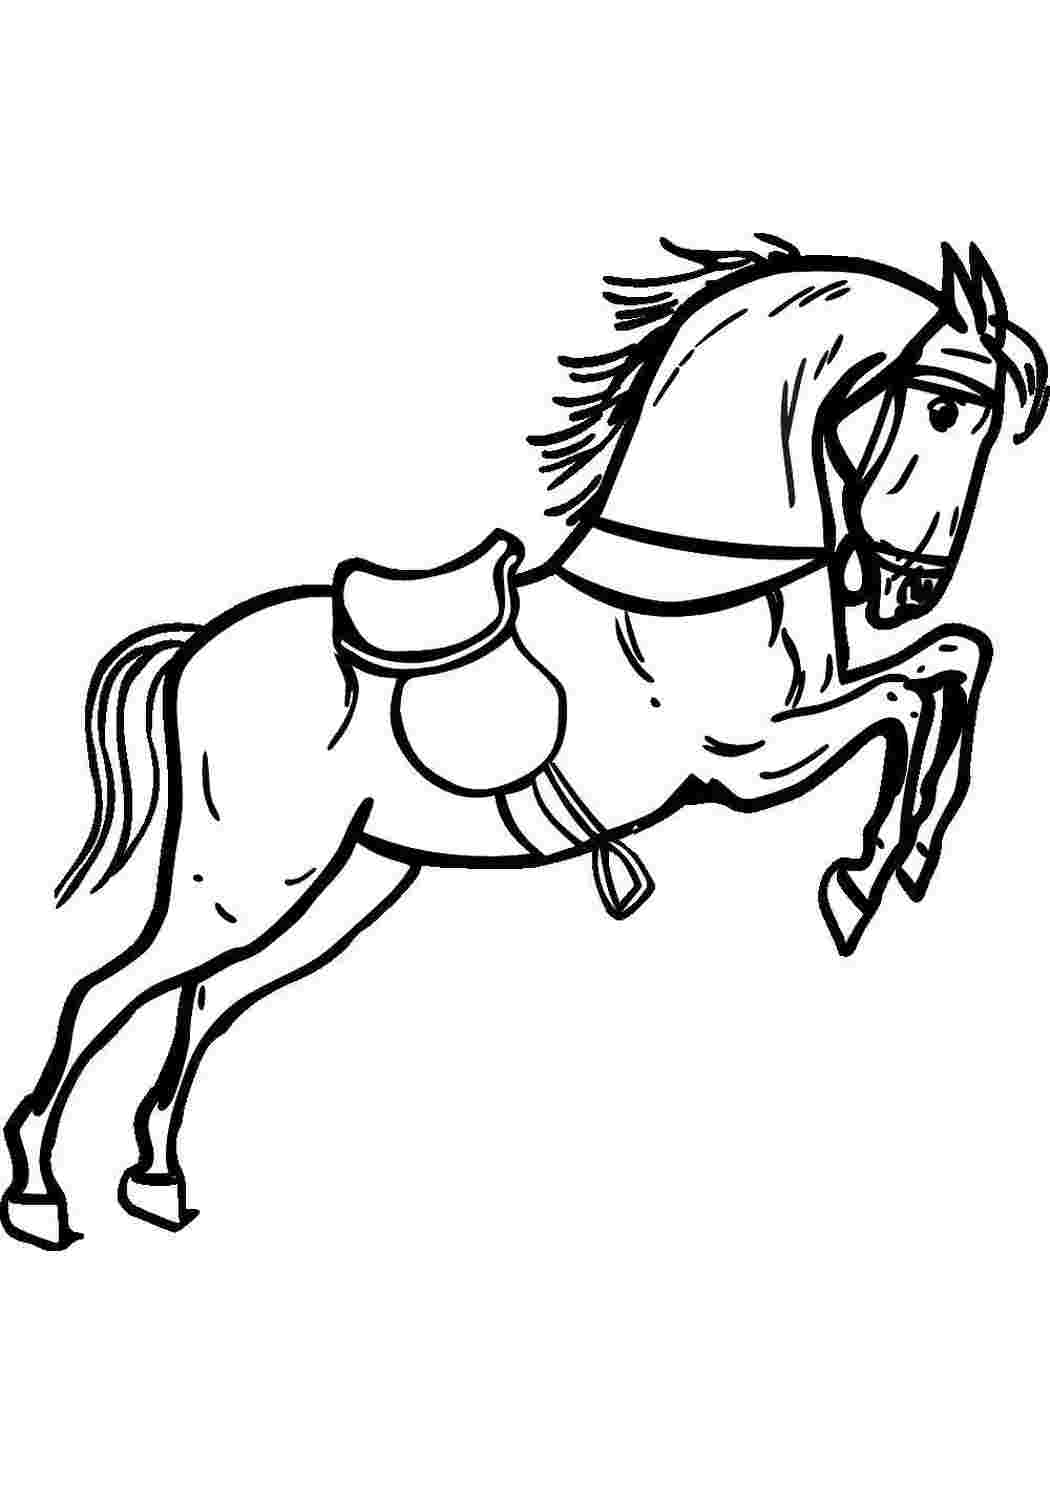 100 000 изображений по запросу Раскраска лошадка доступны в рамках роялти-фри лицензии